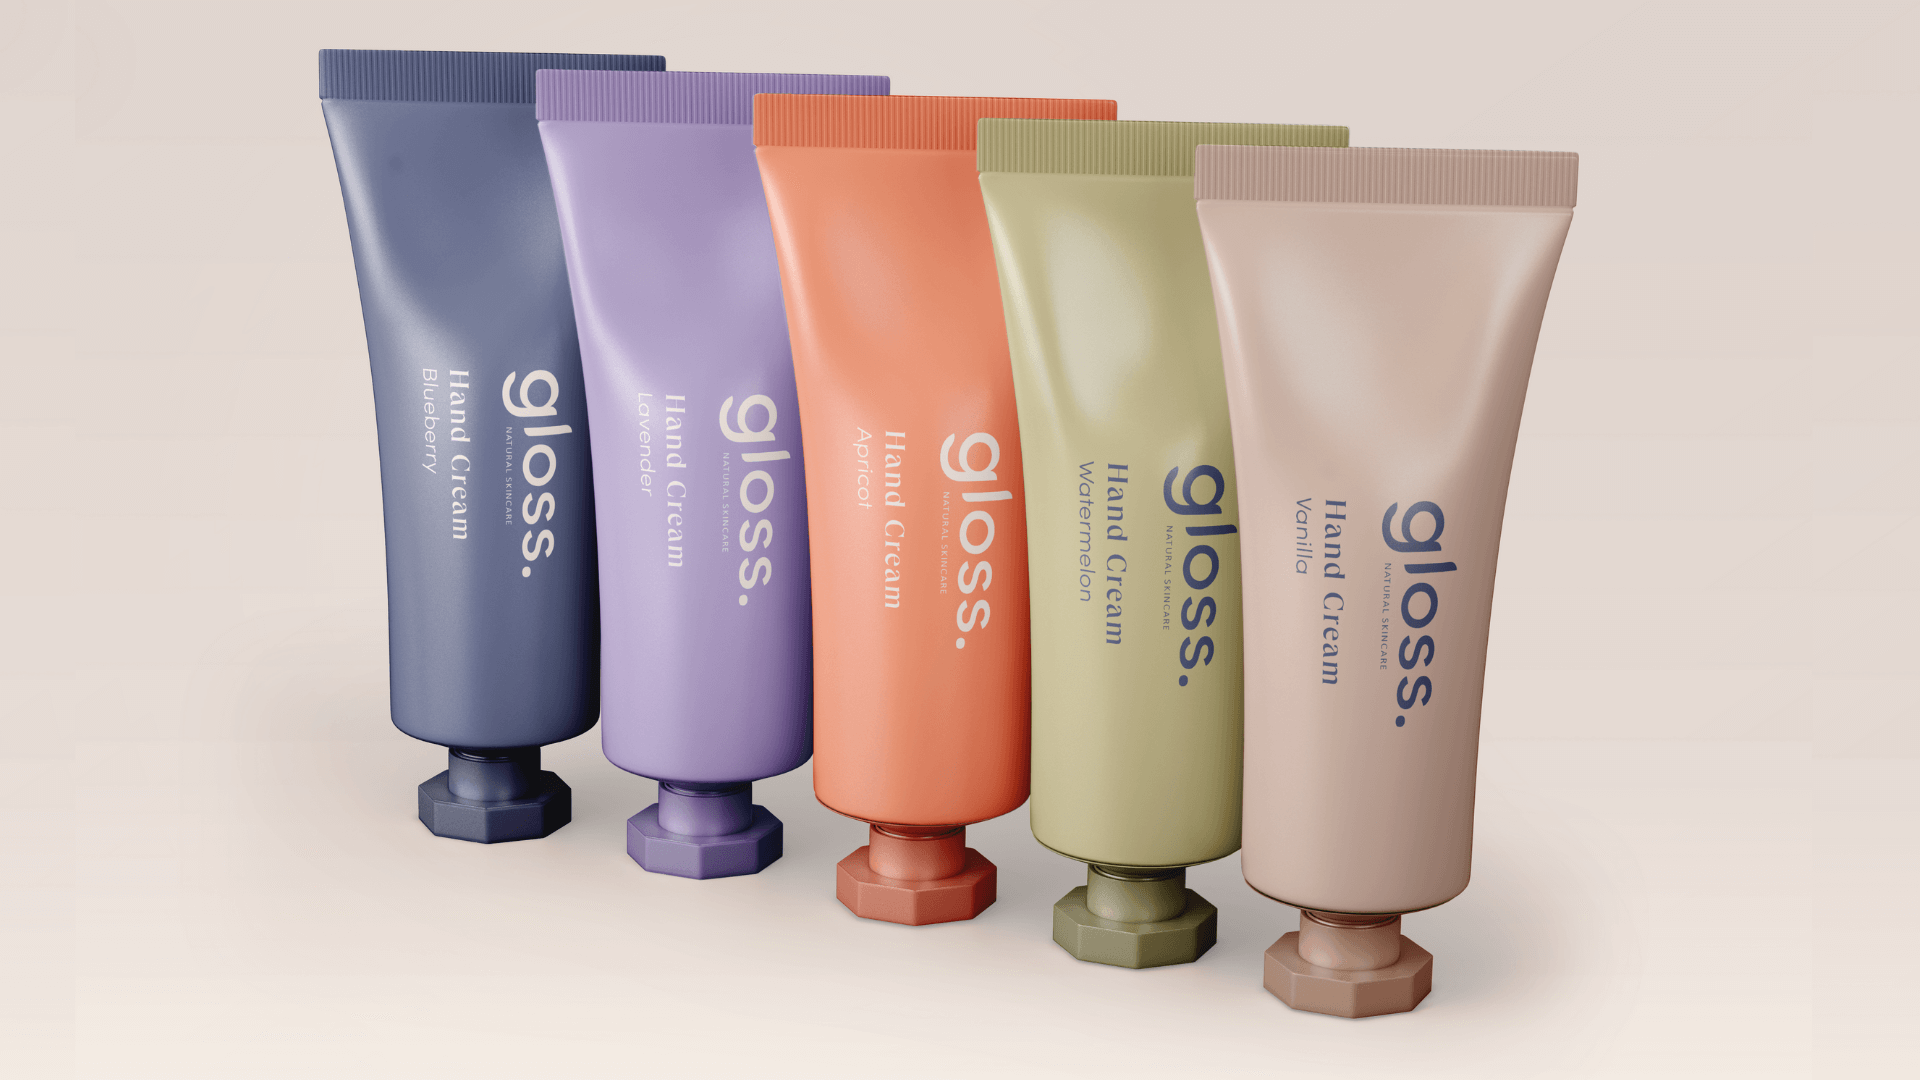 Tube packaging for skincare brand Gloss - Brand Identity Inspiration